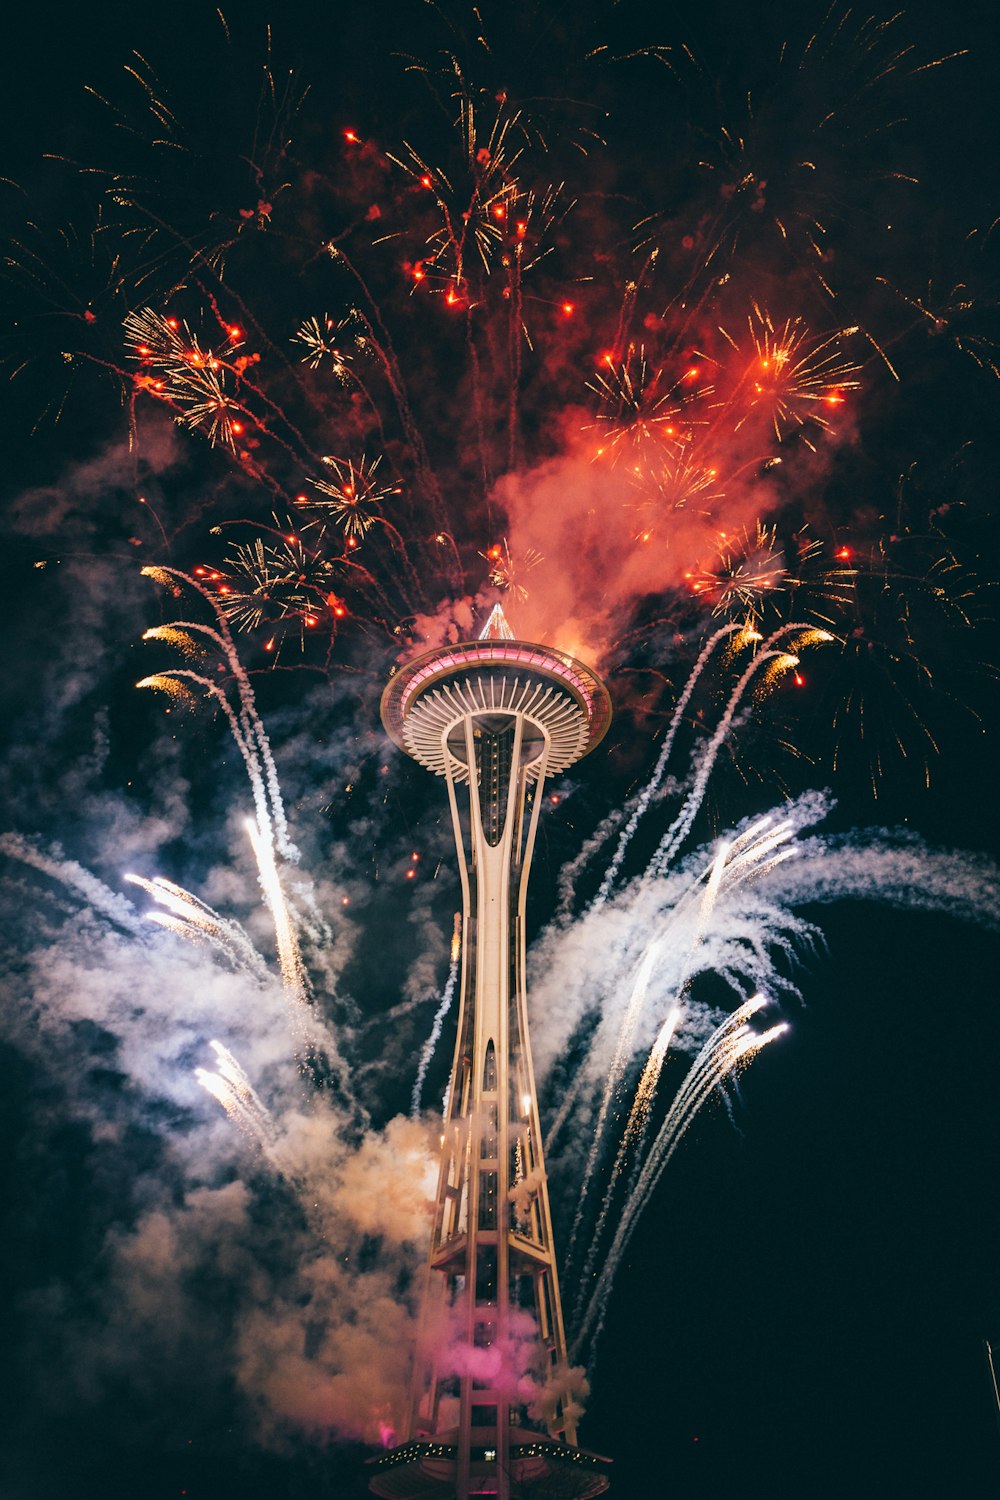 Space Needle, Seattle entourée de feux d’artifice